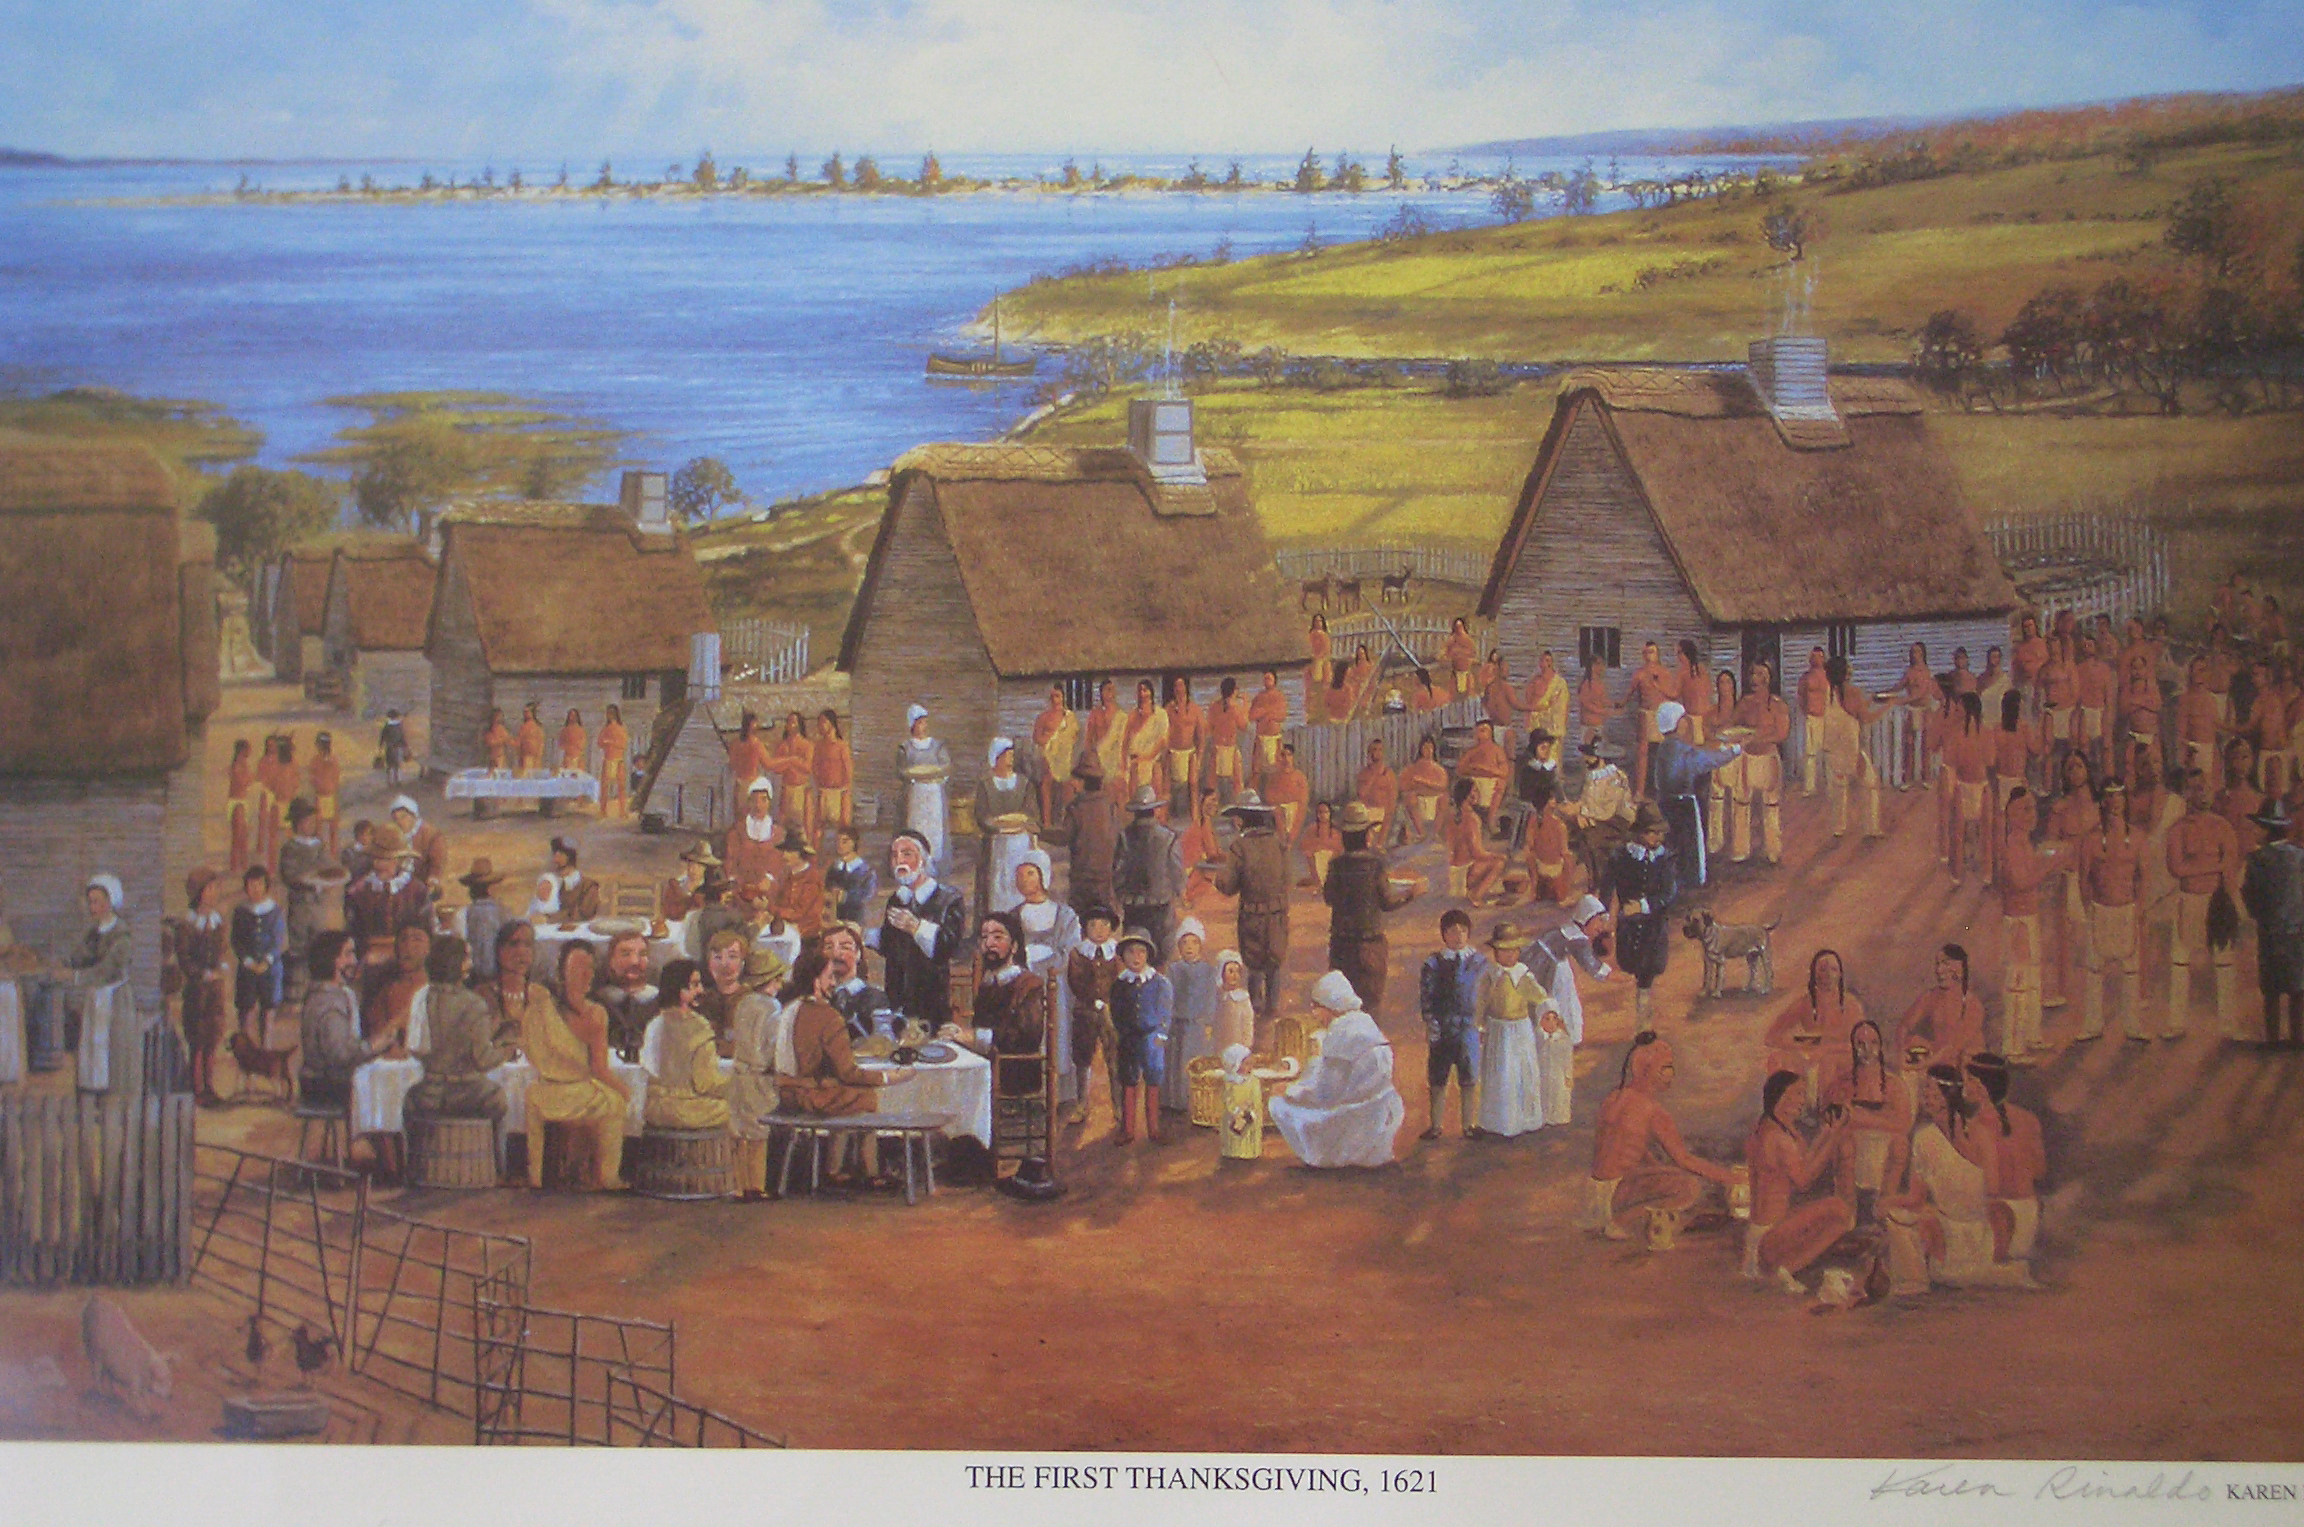 Первый пилигрим. Пилигримы Плимута Массачусетс. Первые поселенцы Америки. Плимутская колония. Первые поселения в Америке.